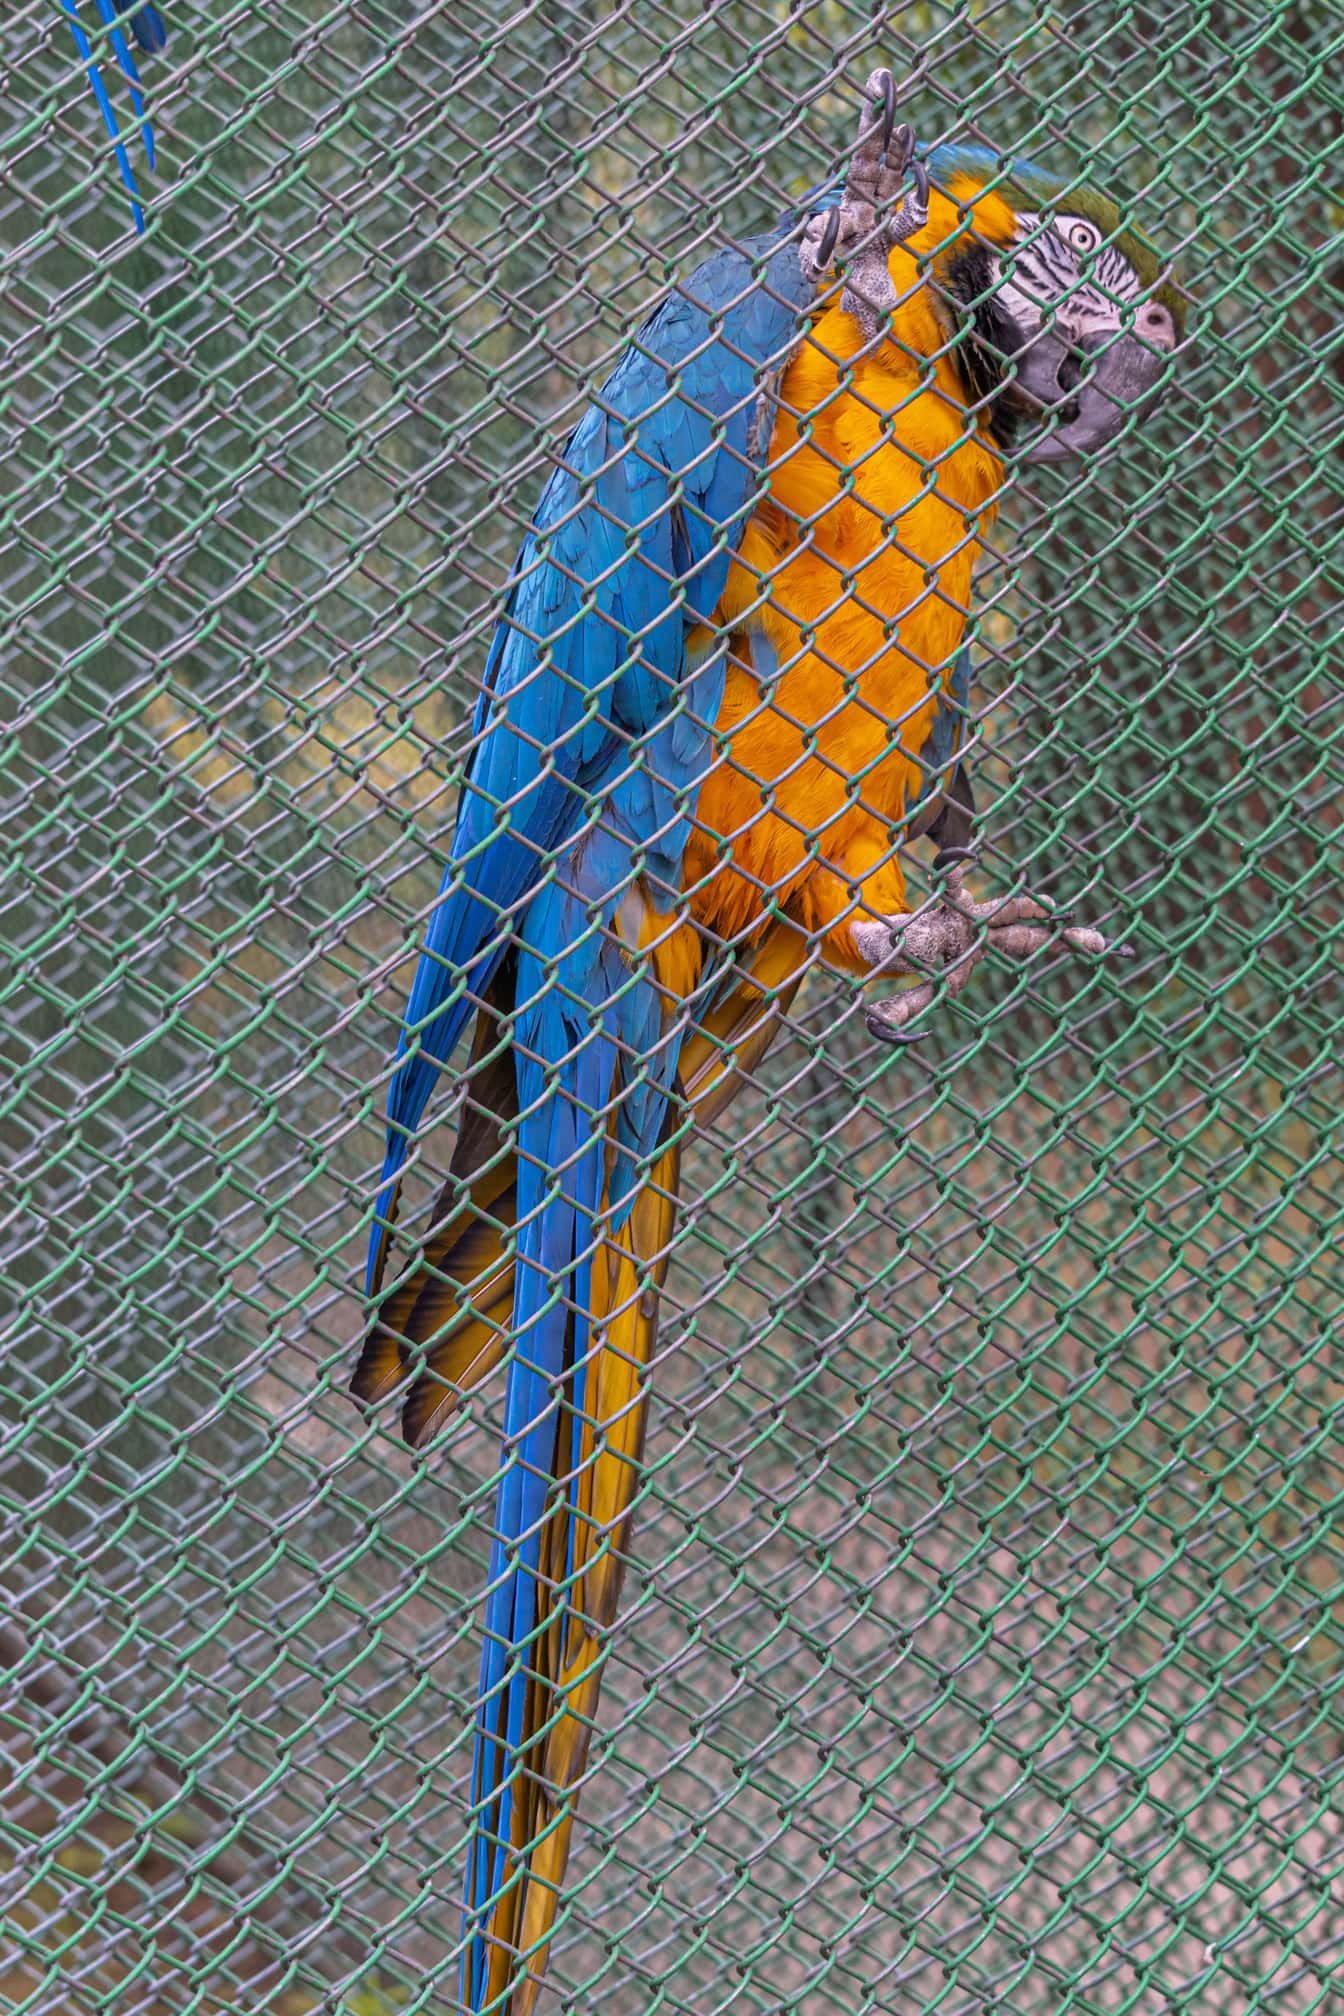 Plavo-zlatna makao (Ara ararauna) ptica papiga u kavezu u zoološkom parku